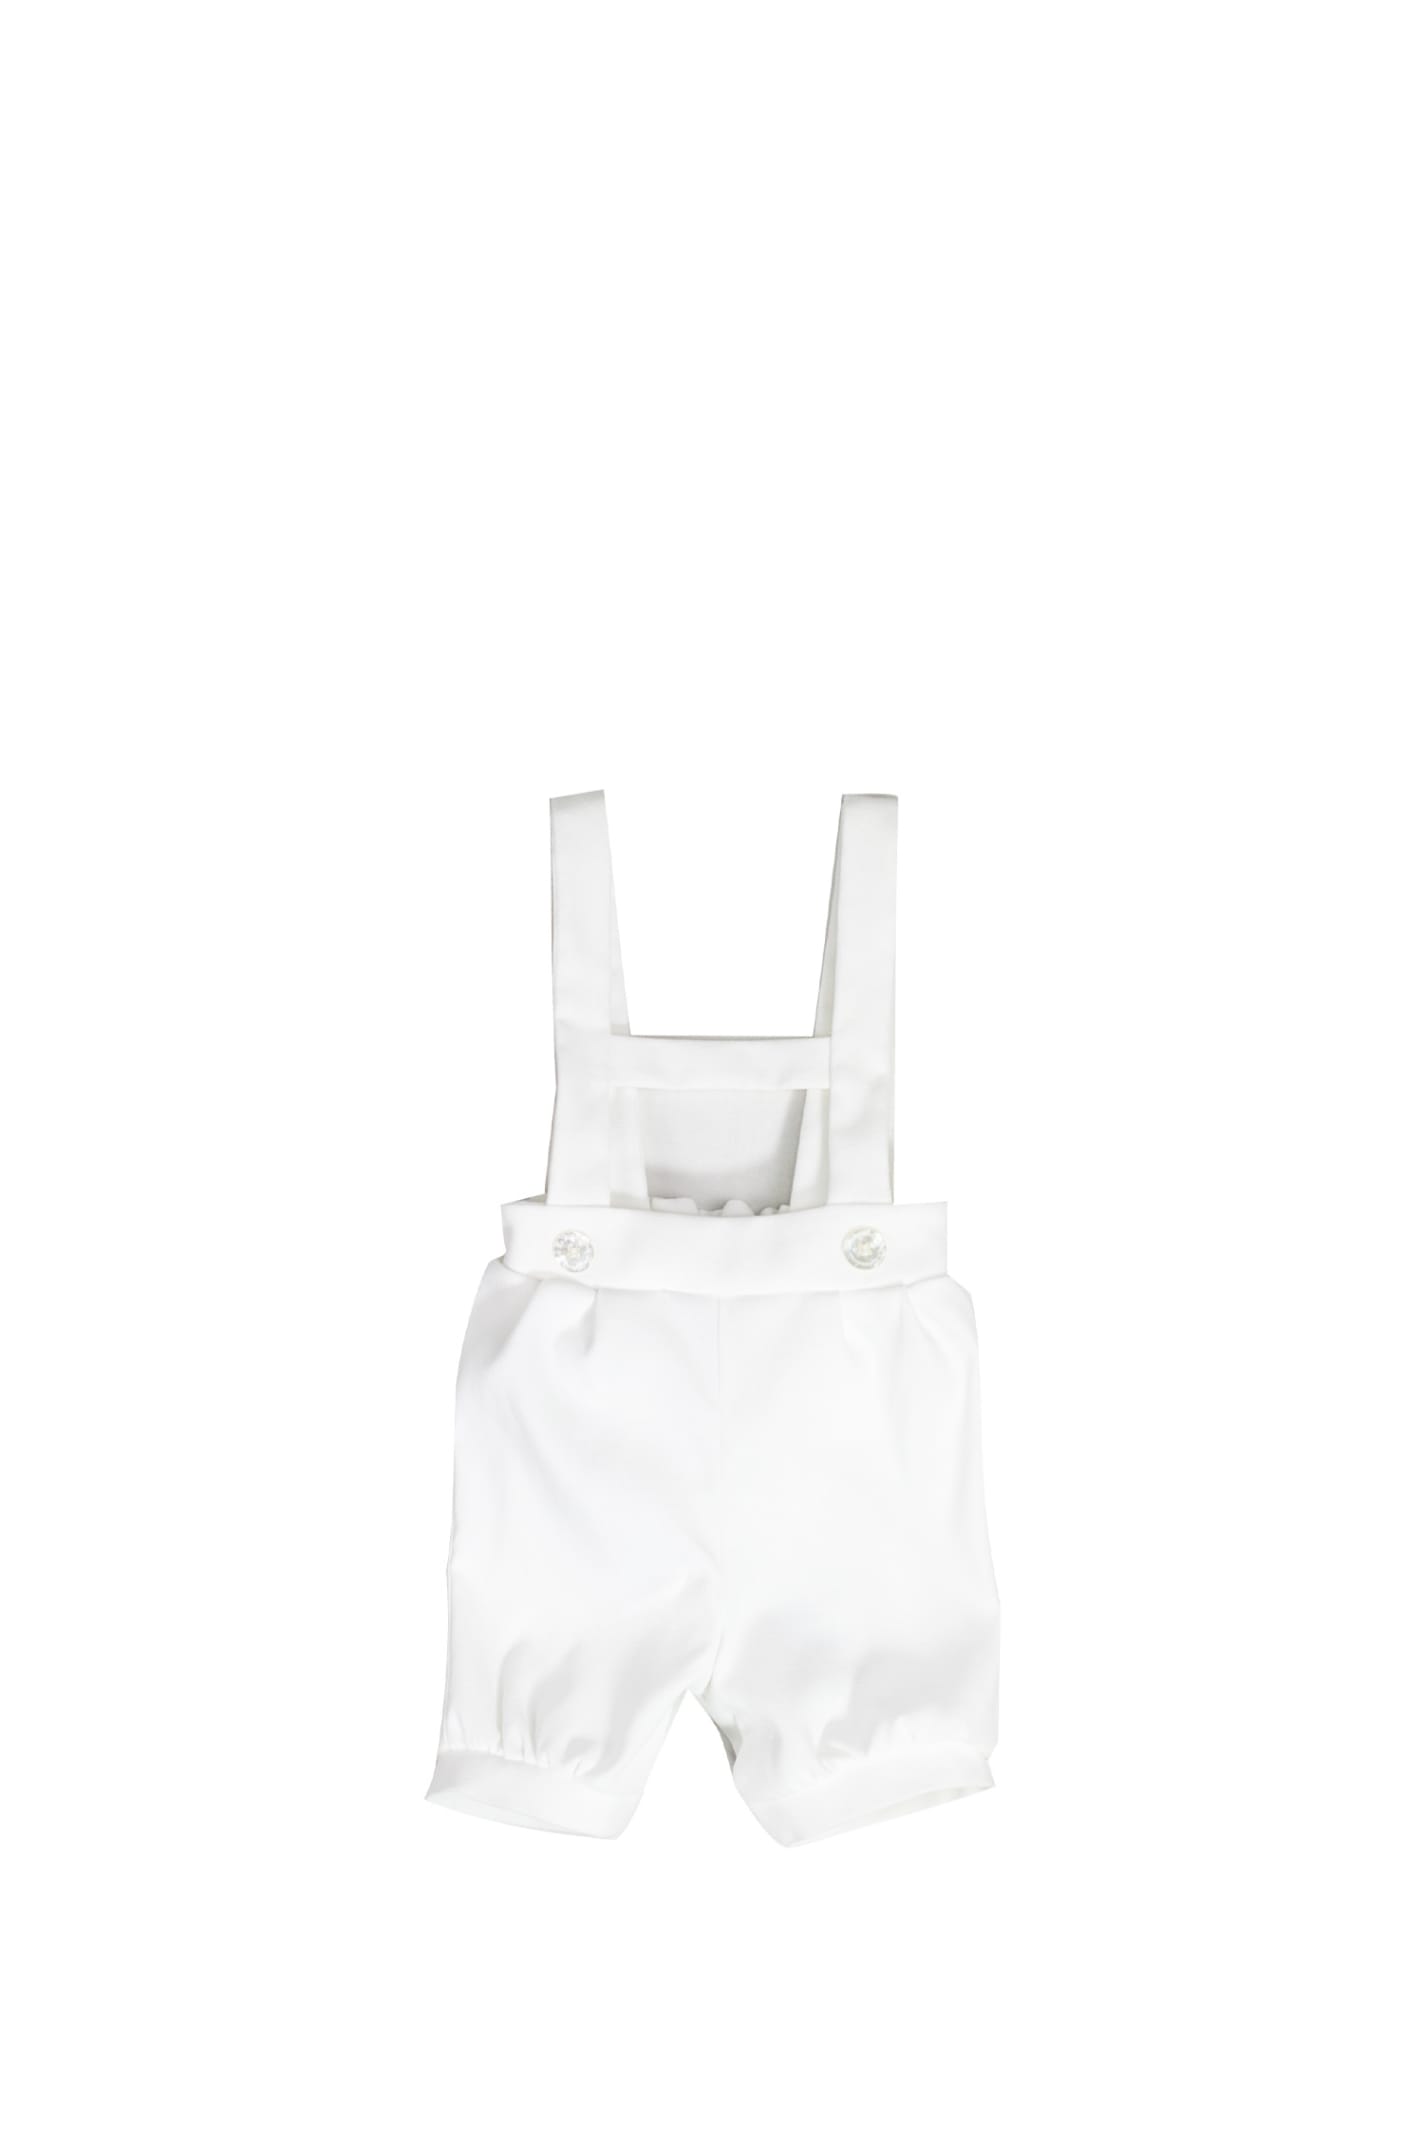 La Stupenderia Babies' Overall In White